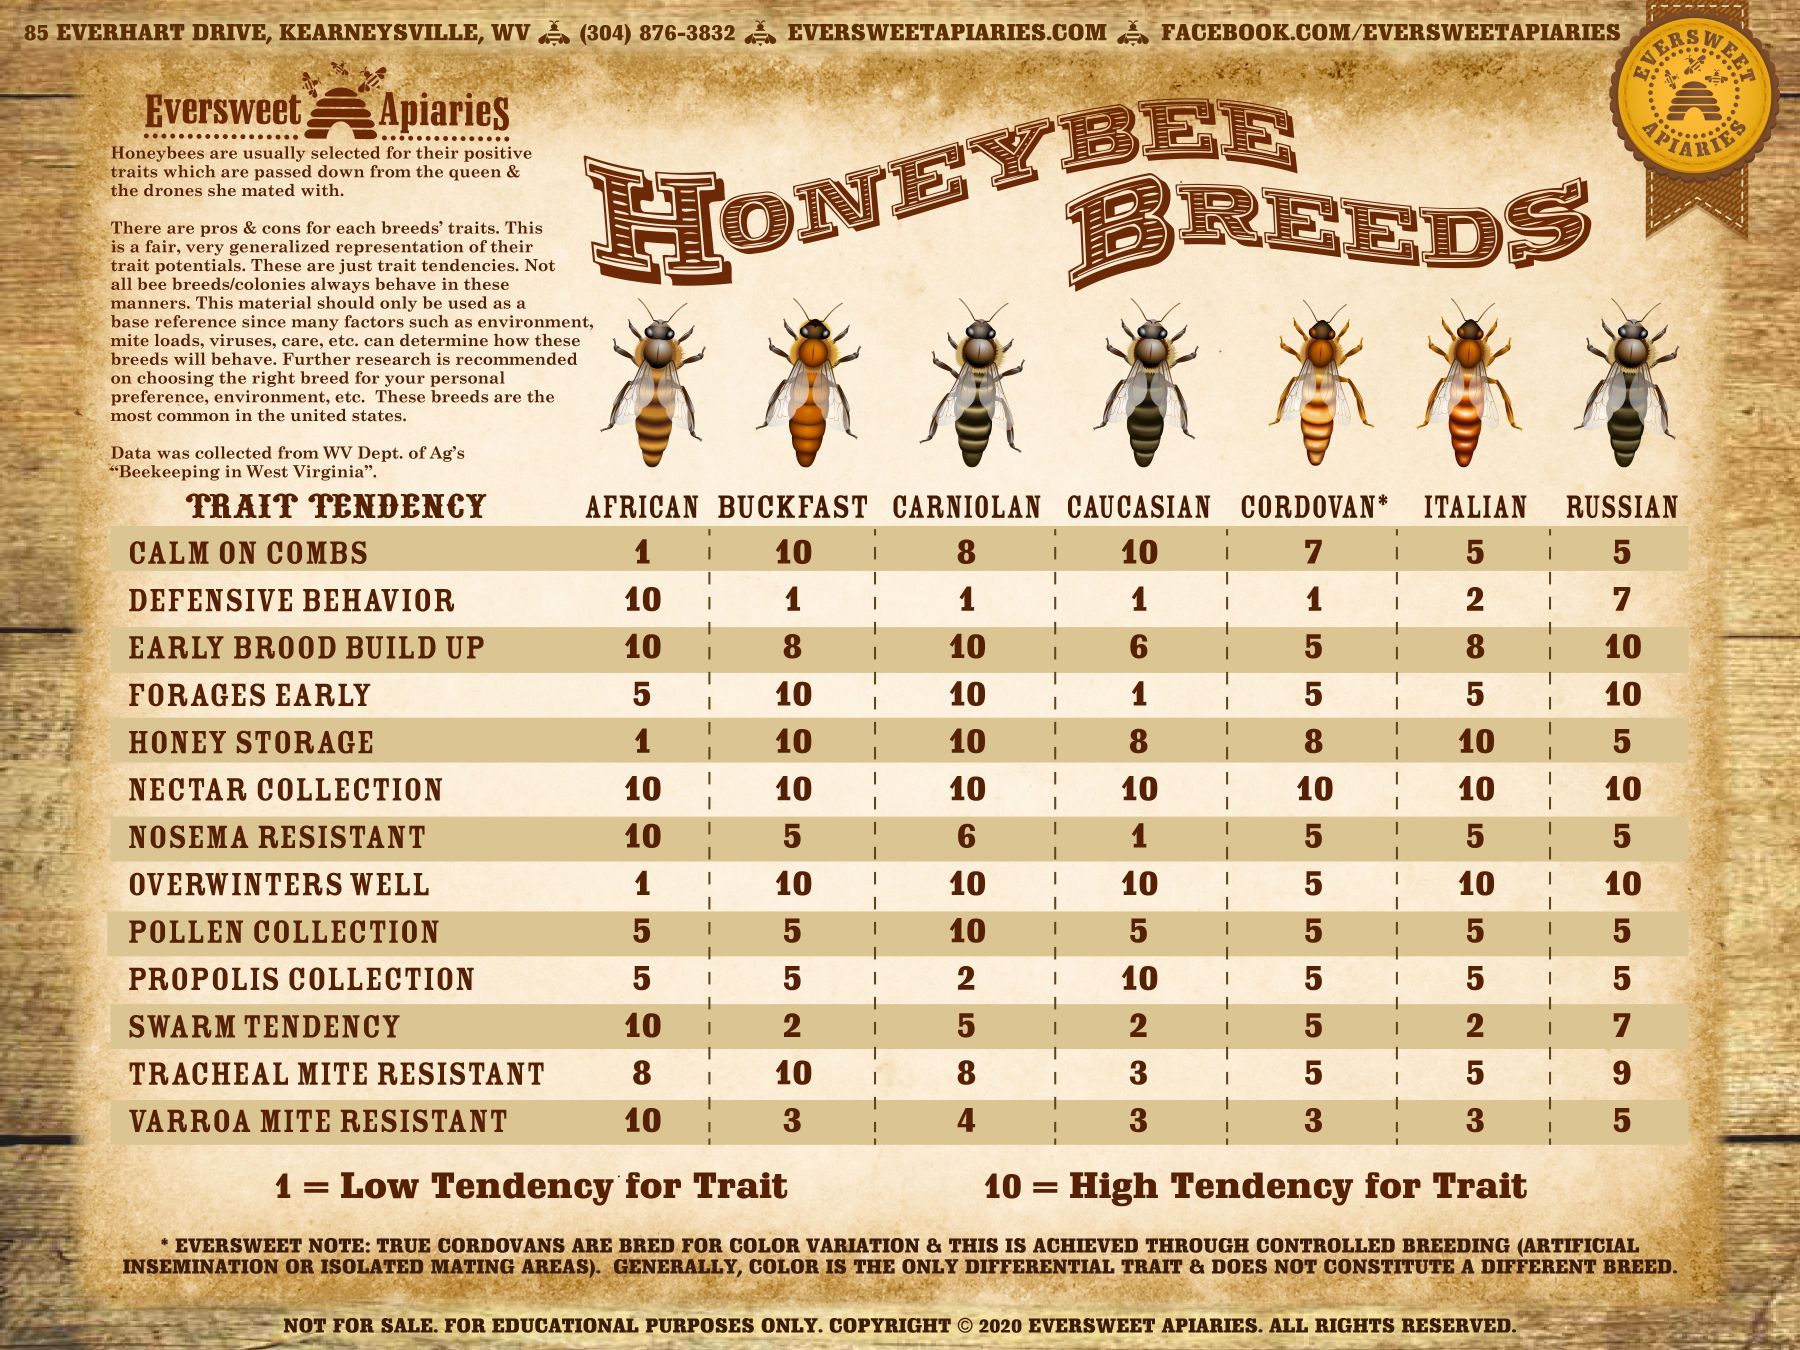 Honeybee breeds